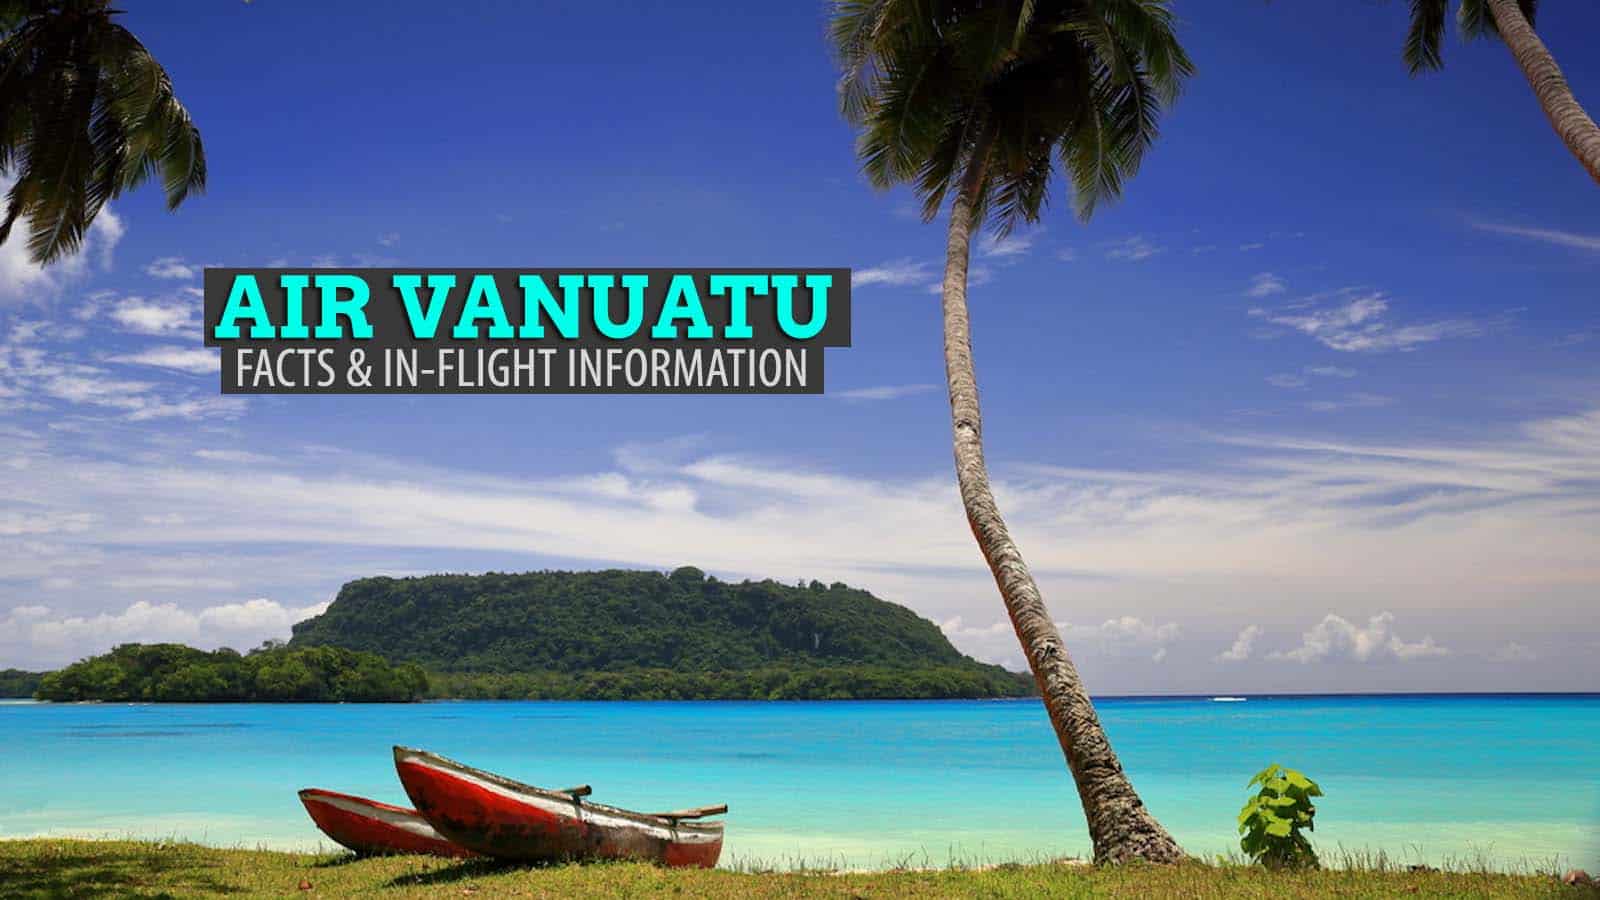 瓦努阿图航空公司:事实和机上信息